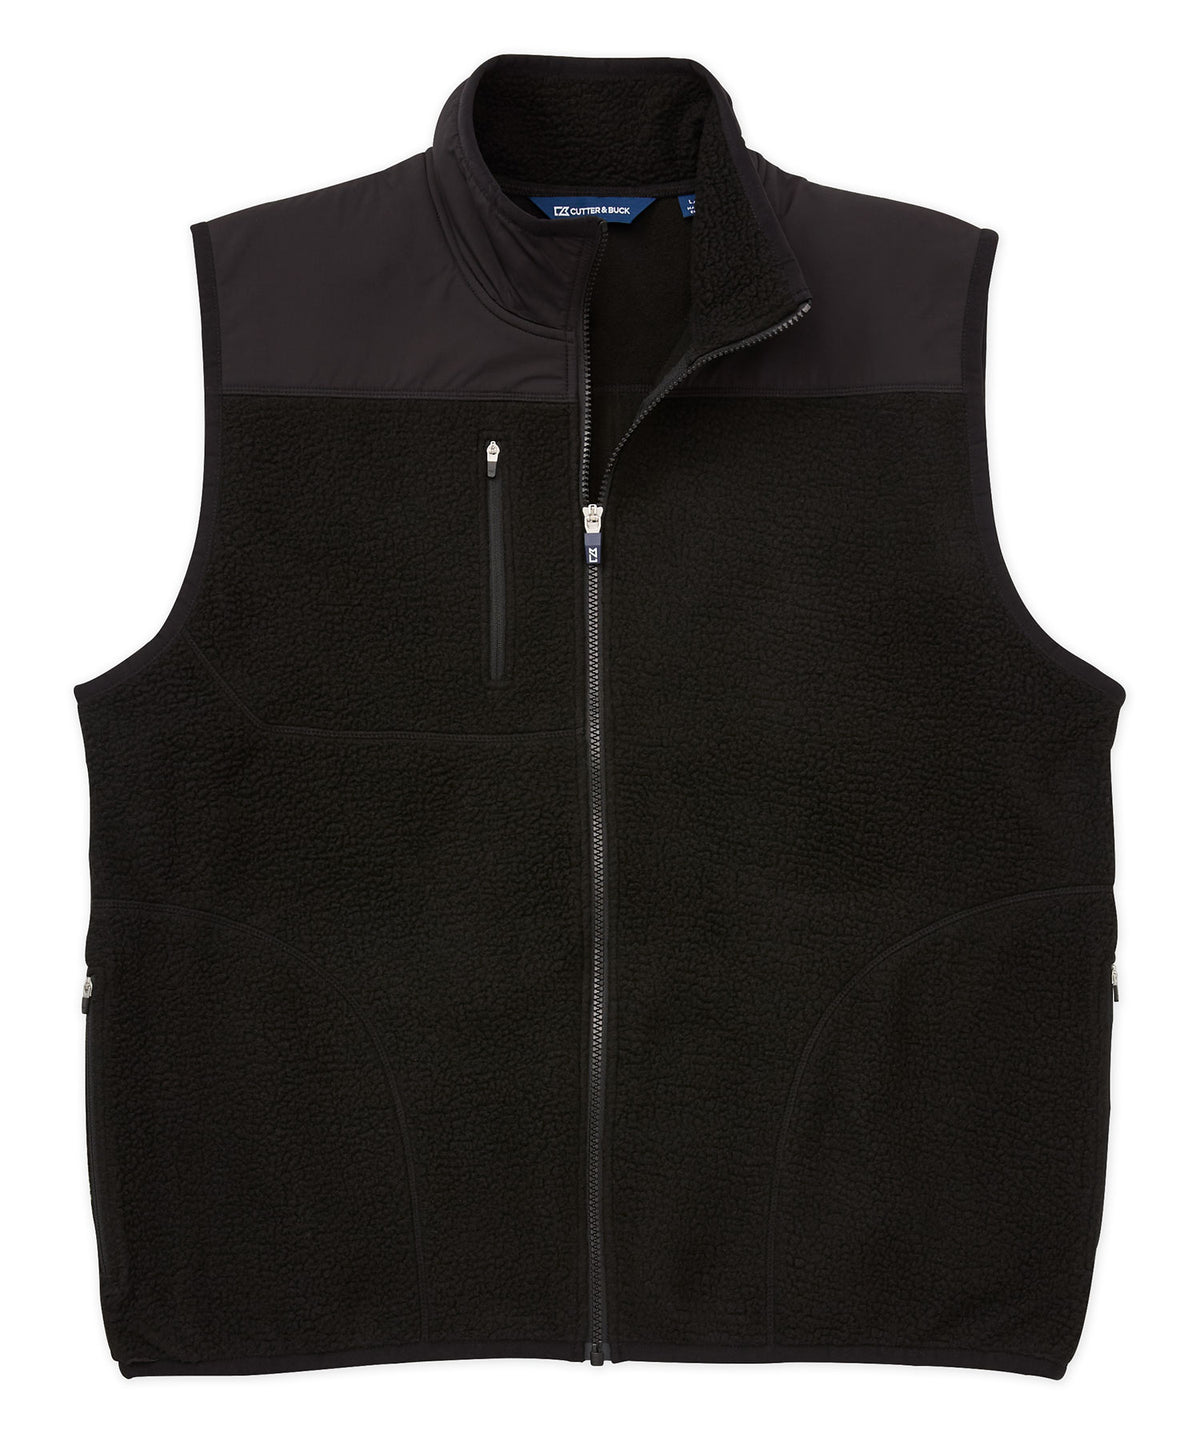 Cutter & Buck Cascade Eco Sherpa Fleece Vest, Big & Tall